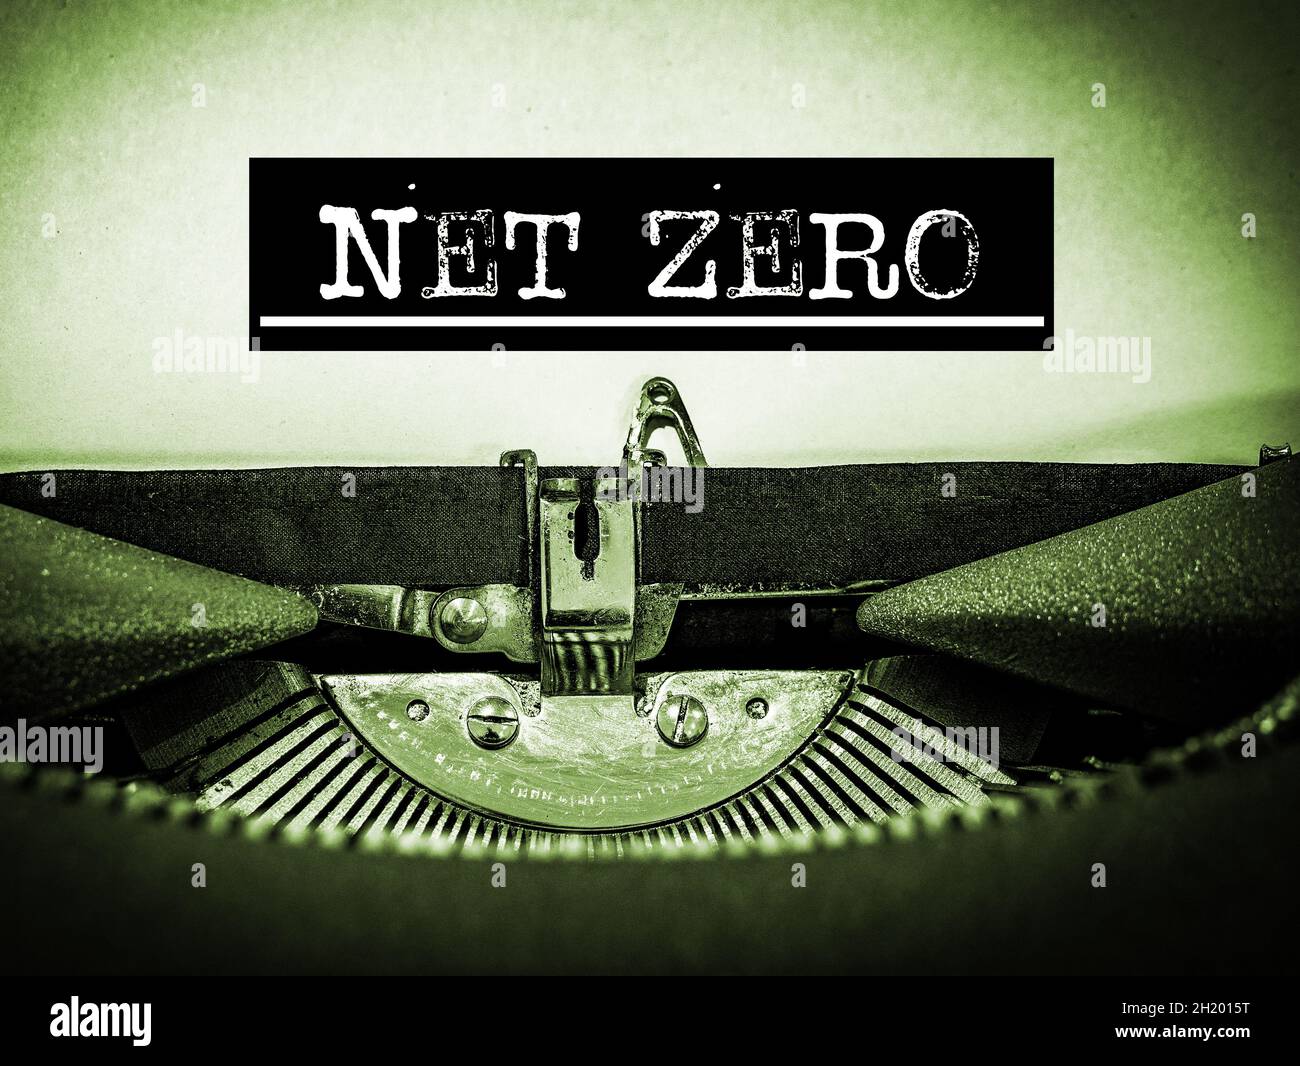 NET Zero visualizzato su una macchina da scrivere vintage con testo sottolineato e bordo nero in un tono verde Foto Stock